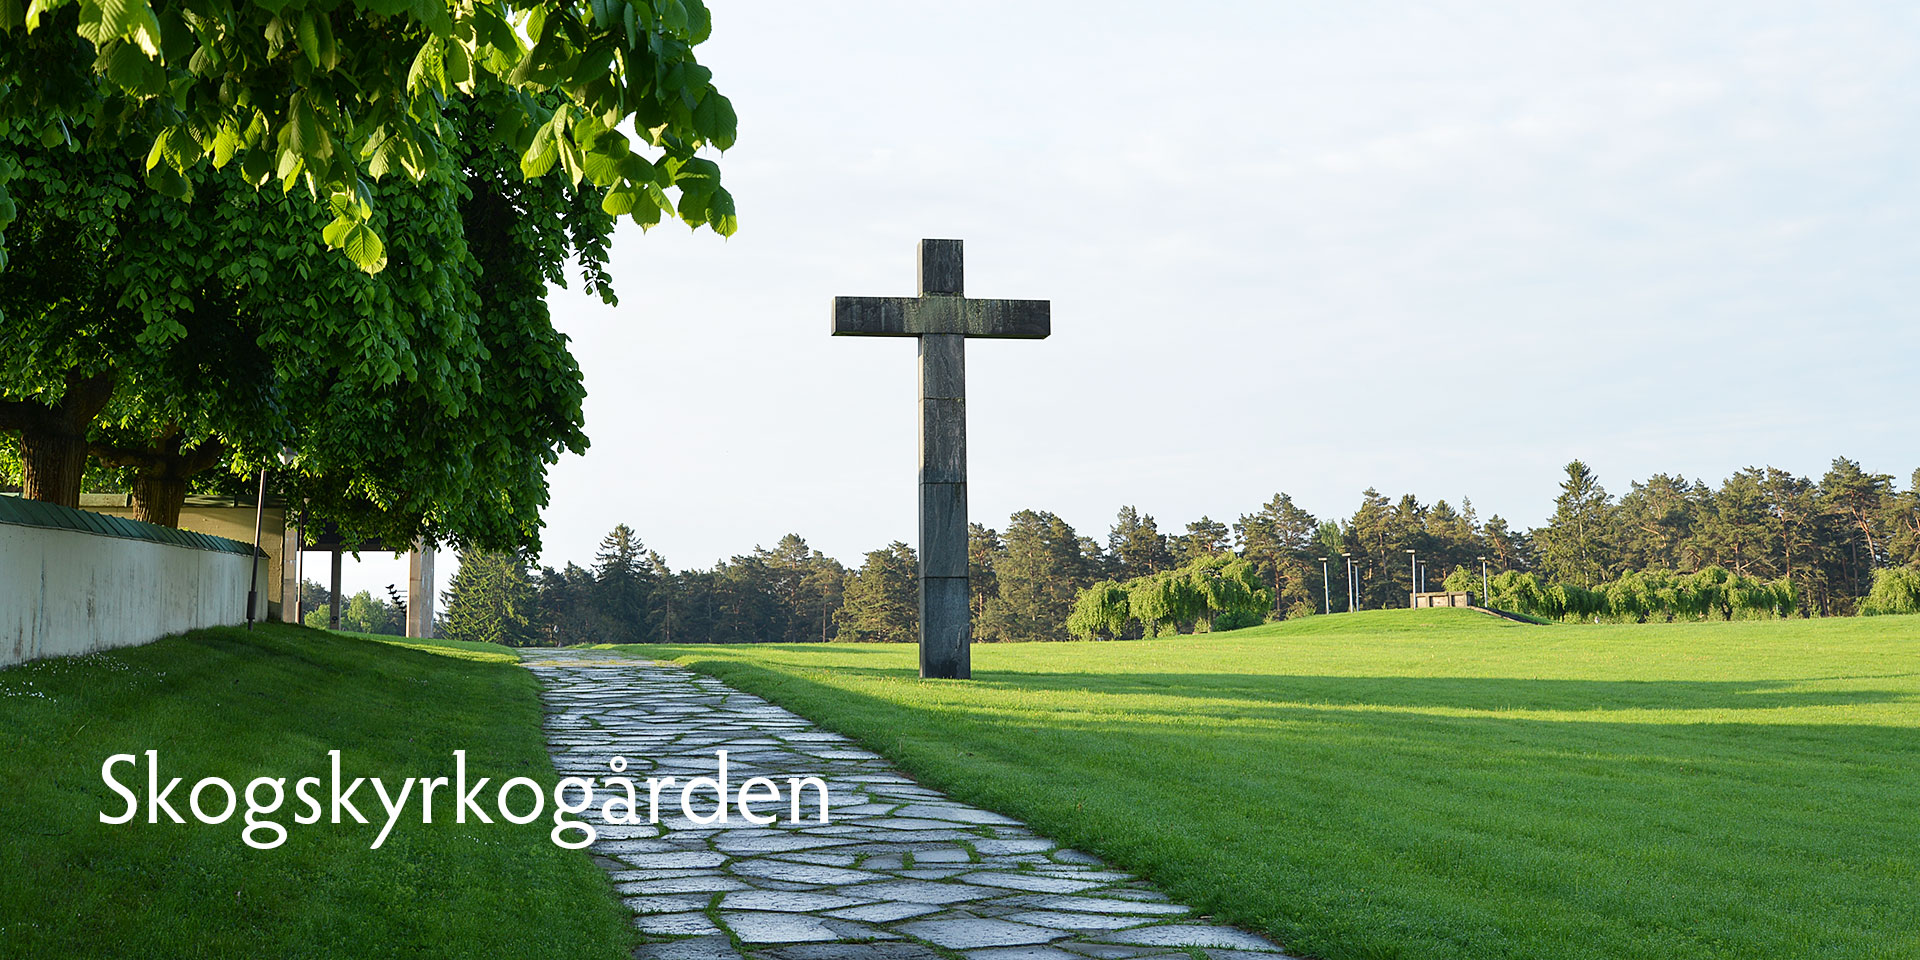 北欧フィーカ スウェーデン ストックホルムの旅 アスプルンドの森の十字架 世界遺産 森の墓地へ Scandinavian Fika